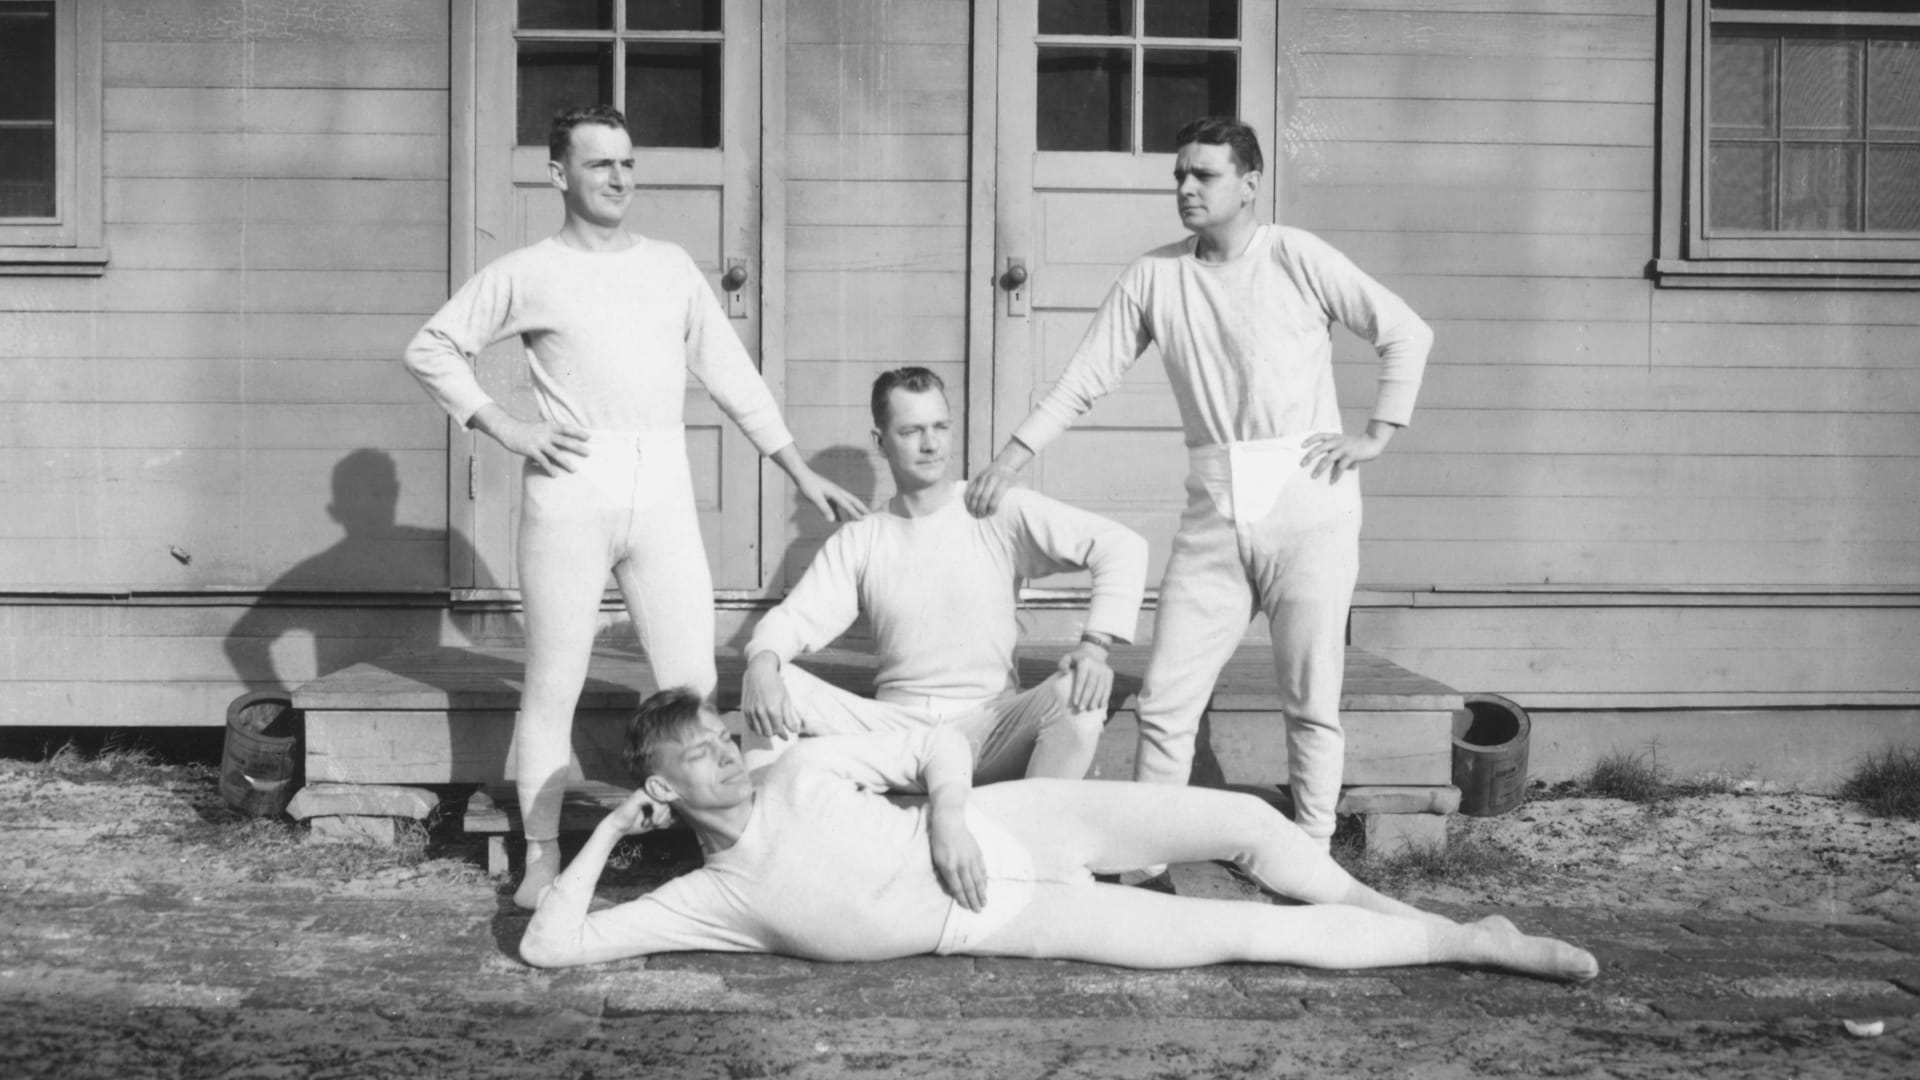 صورة من حوالي العام 1915 يظهر فيها أربعة رجال يرتدون ملابس داخلية طويلة.